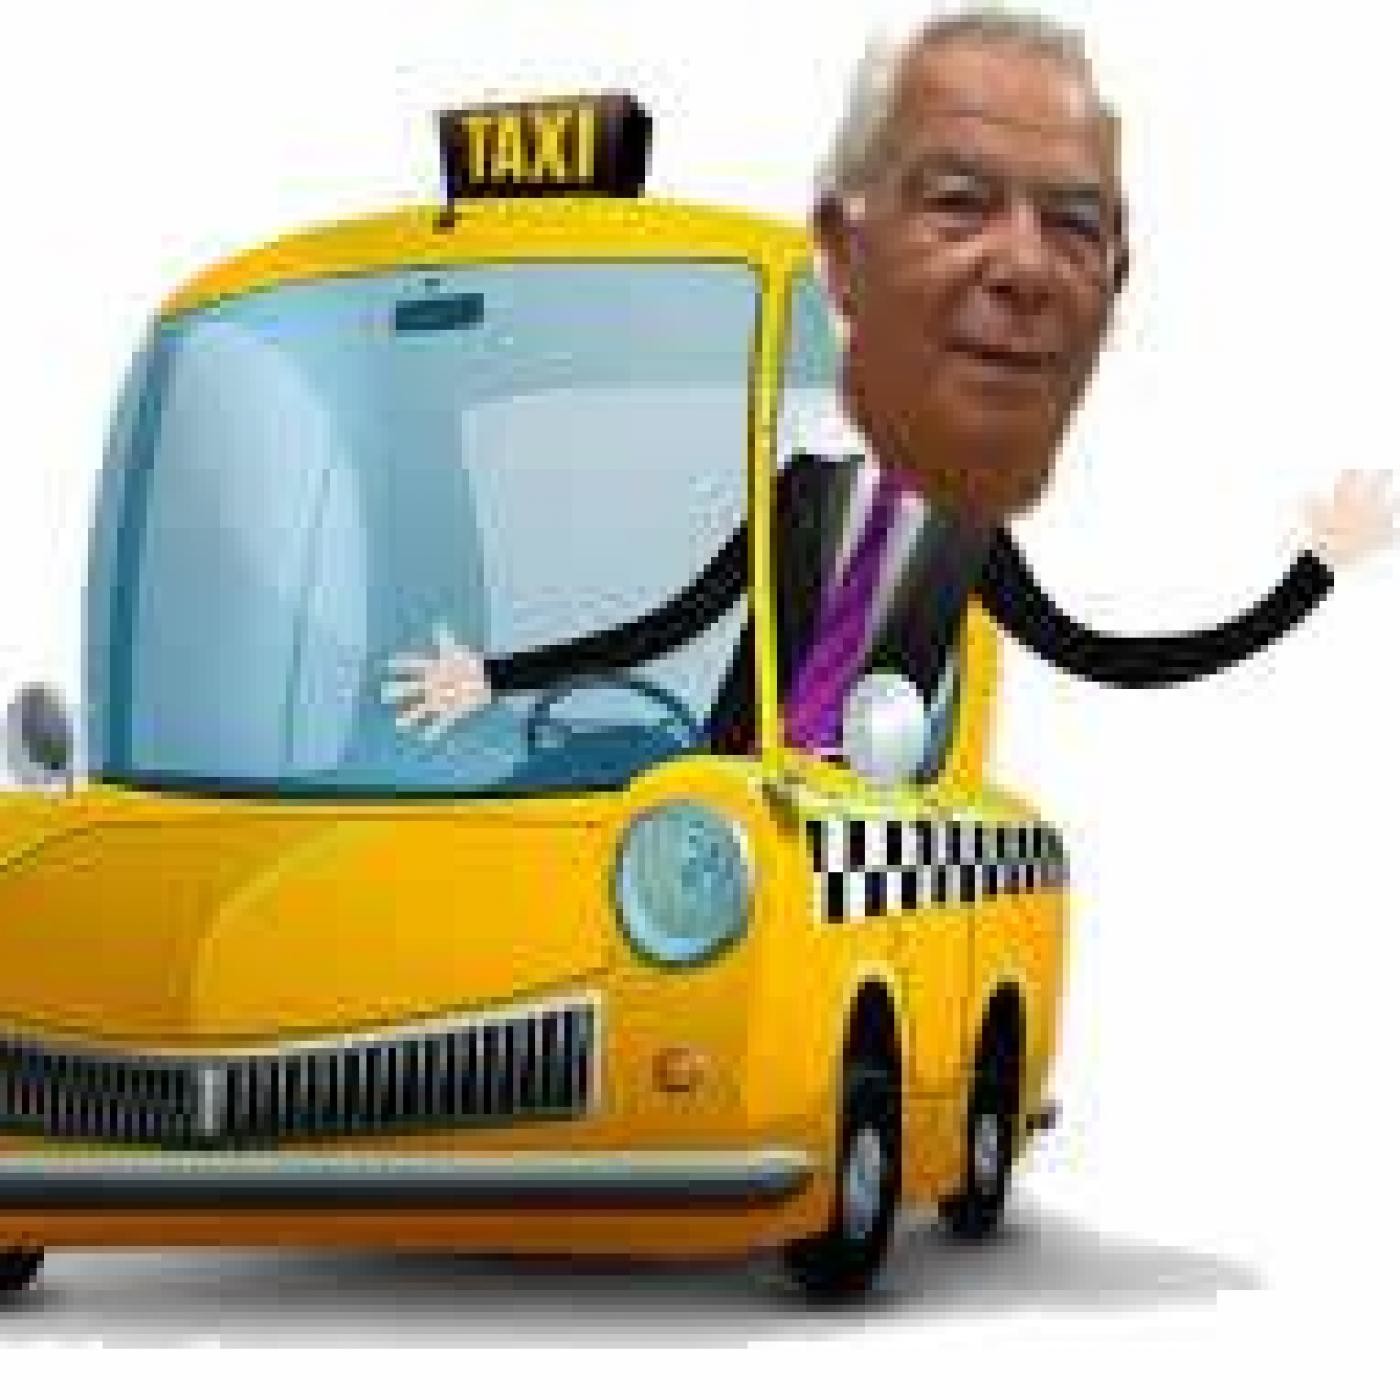 La hora del taxi, viernes 6 de mayo de 2016